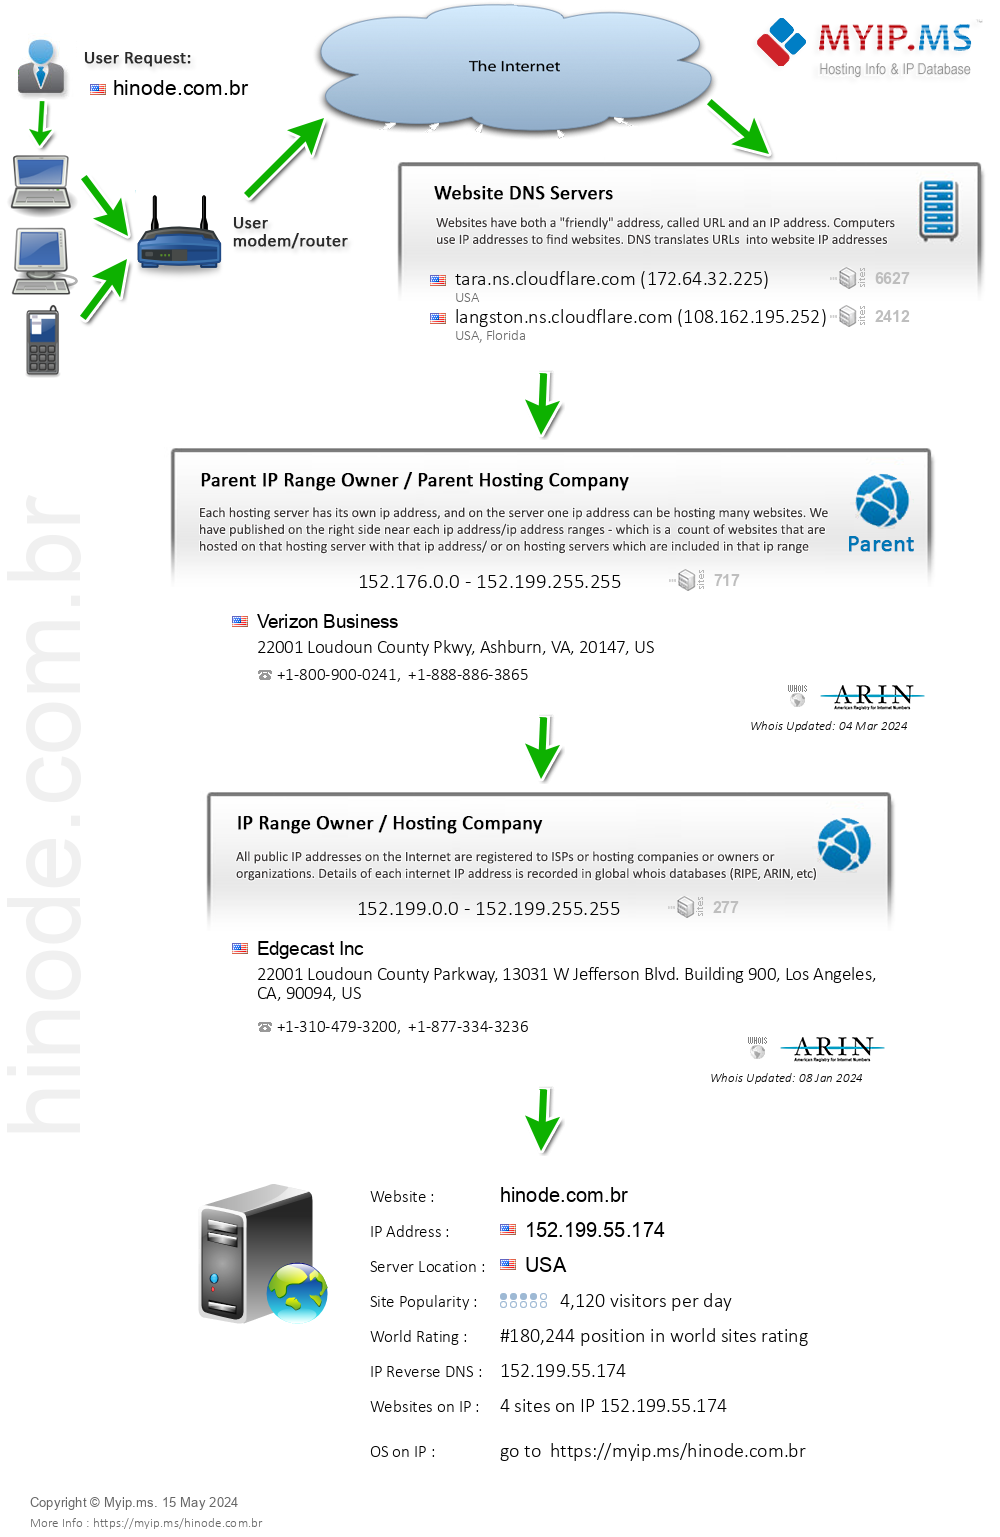 Hinode.com.br - Website Hosting Visual IP Diagram